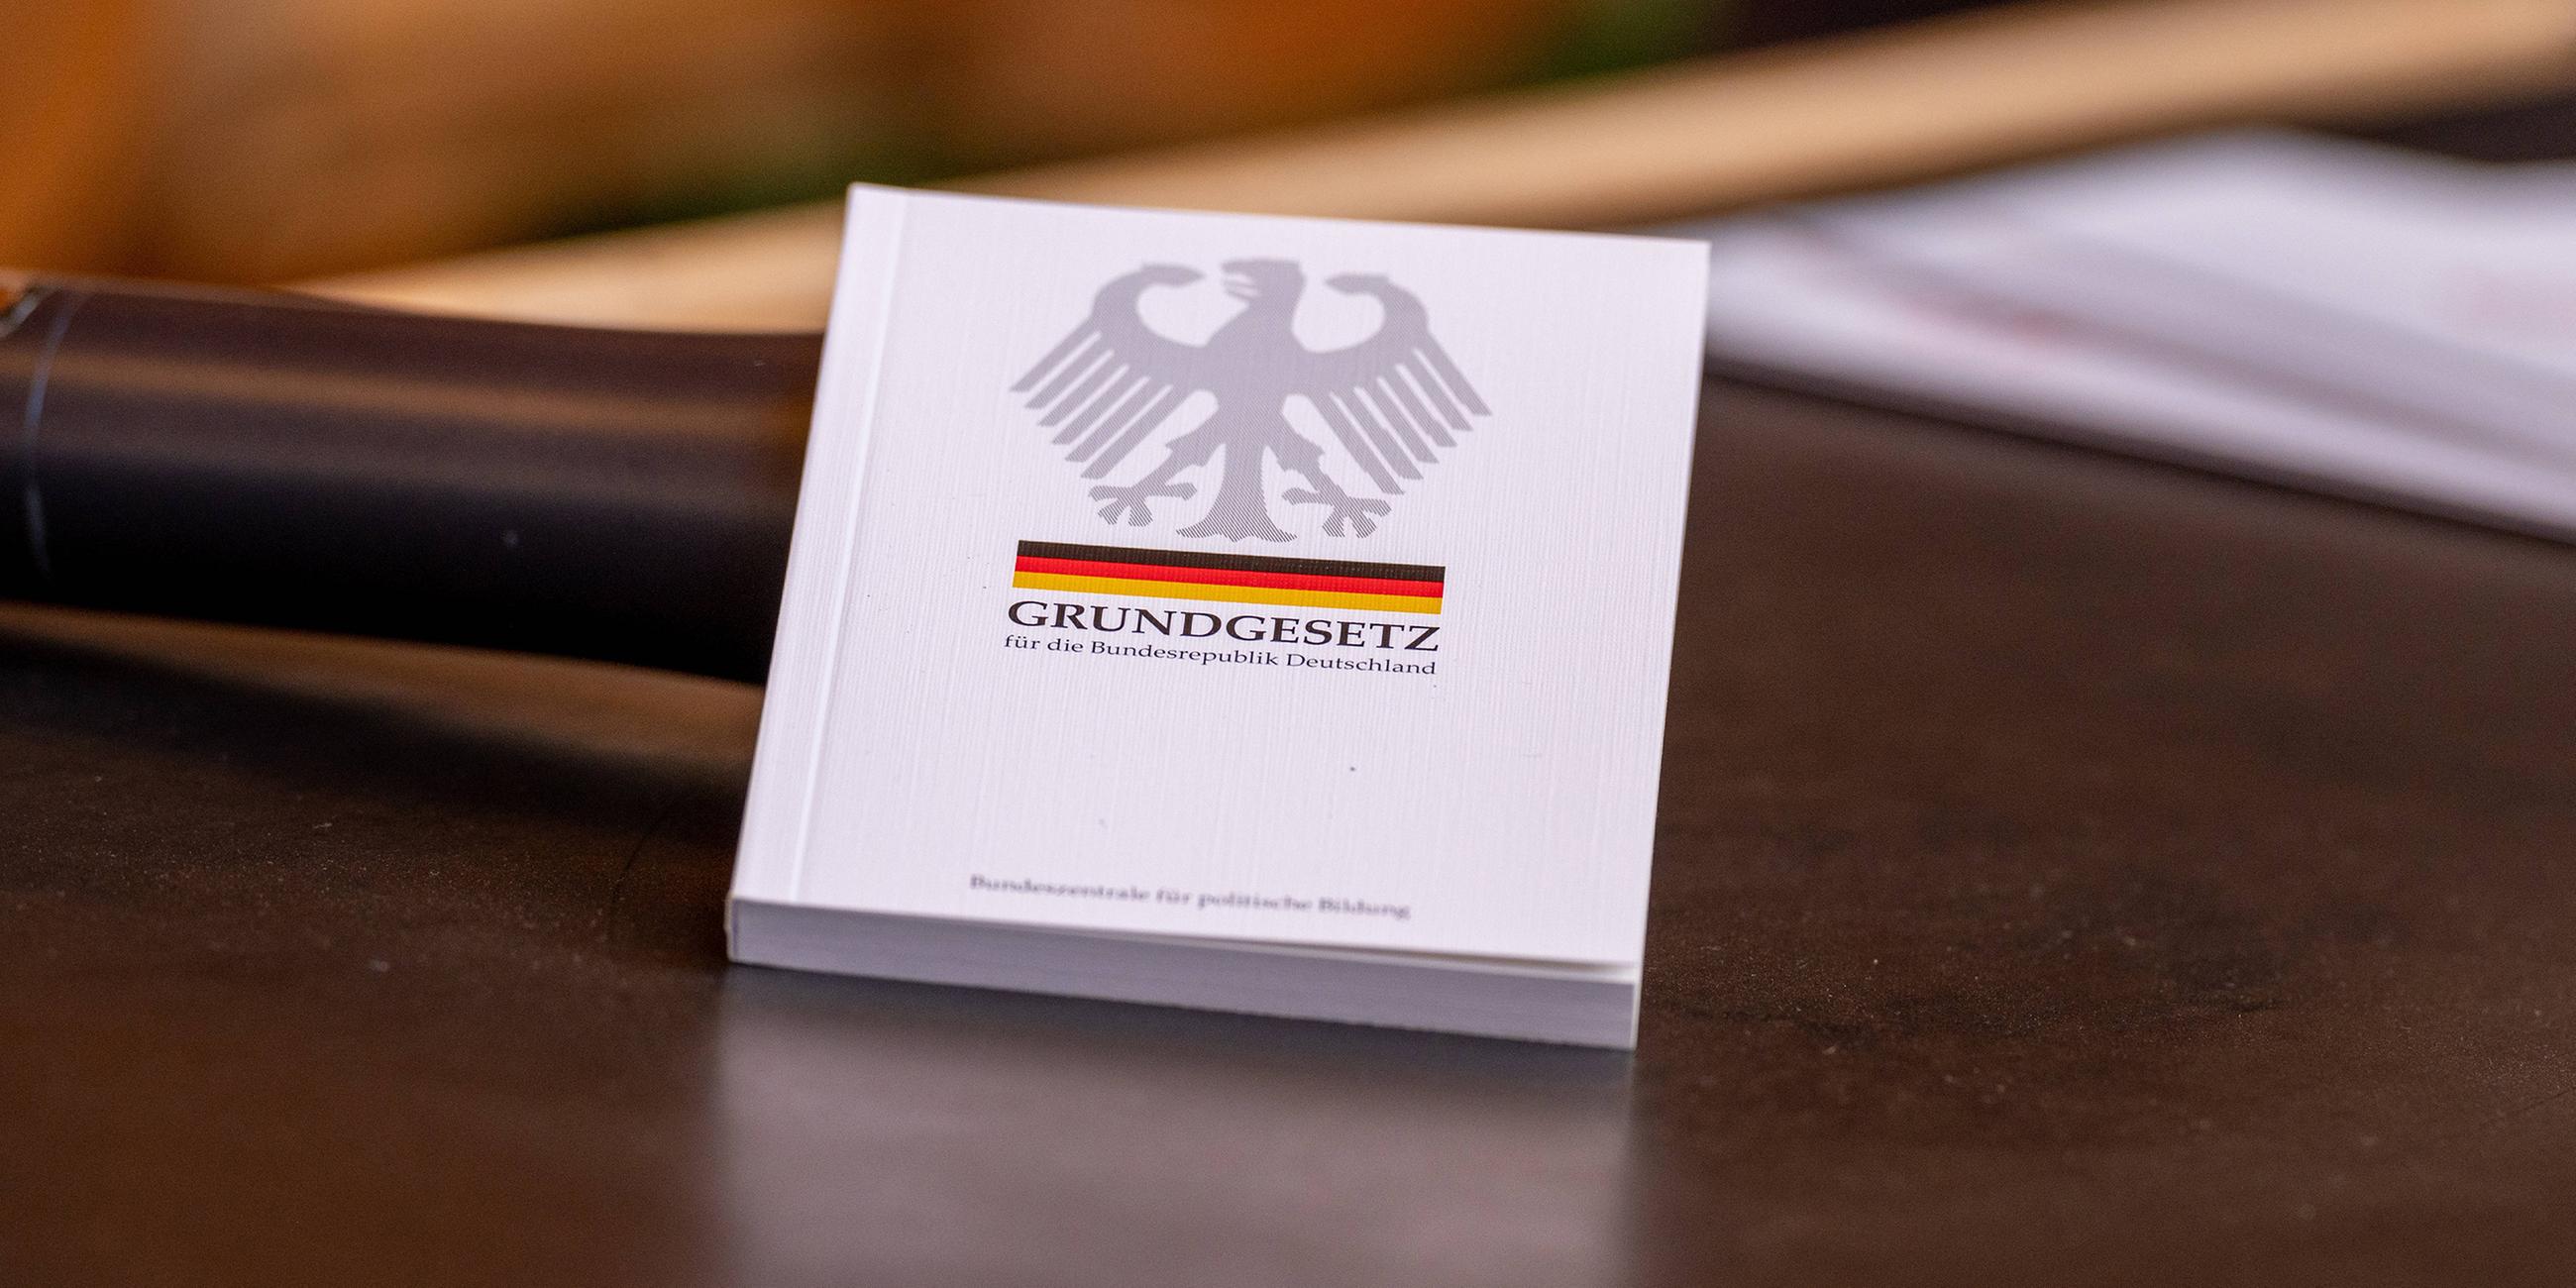 Gundgesetzbuch der Bundesrepublik Deutschland